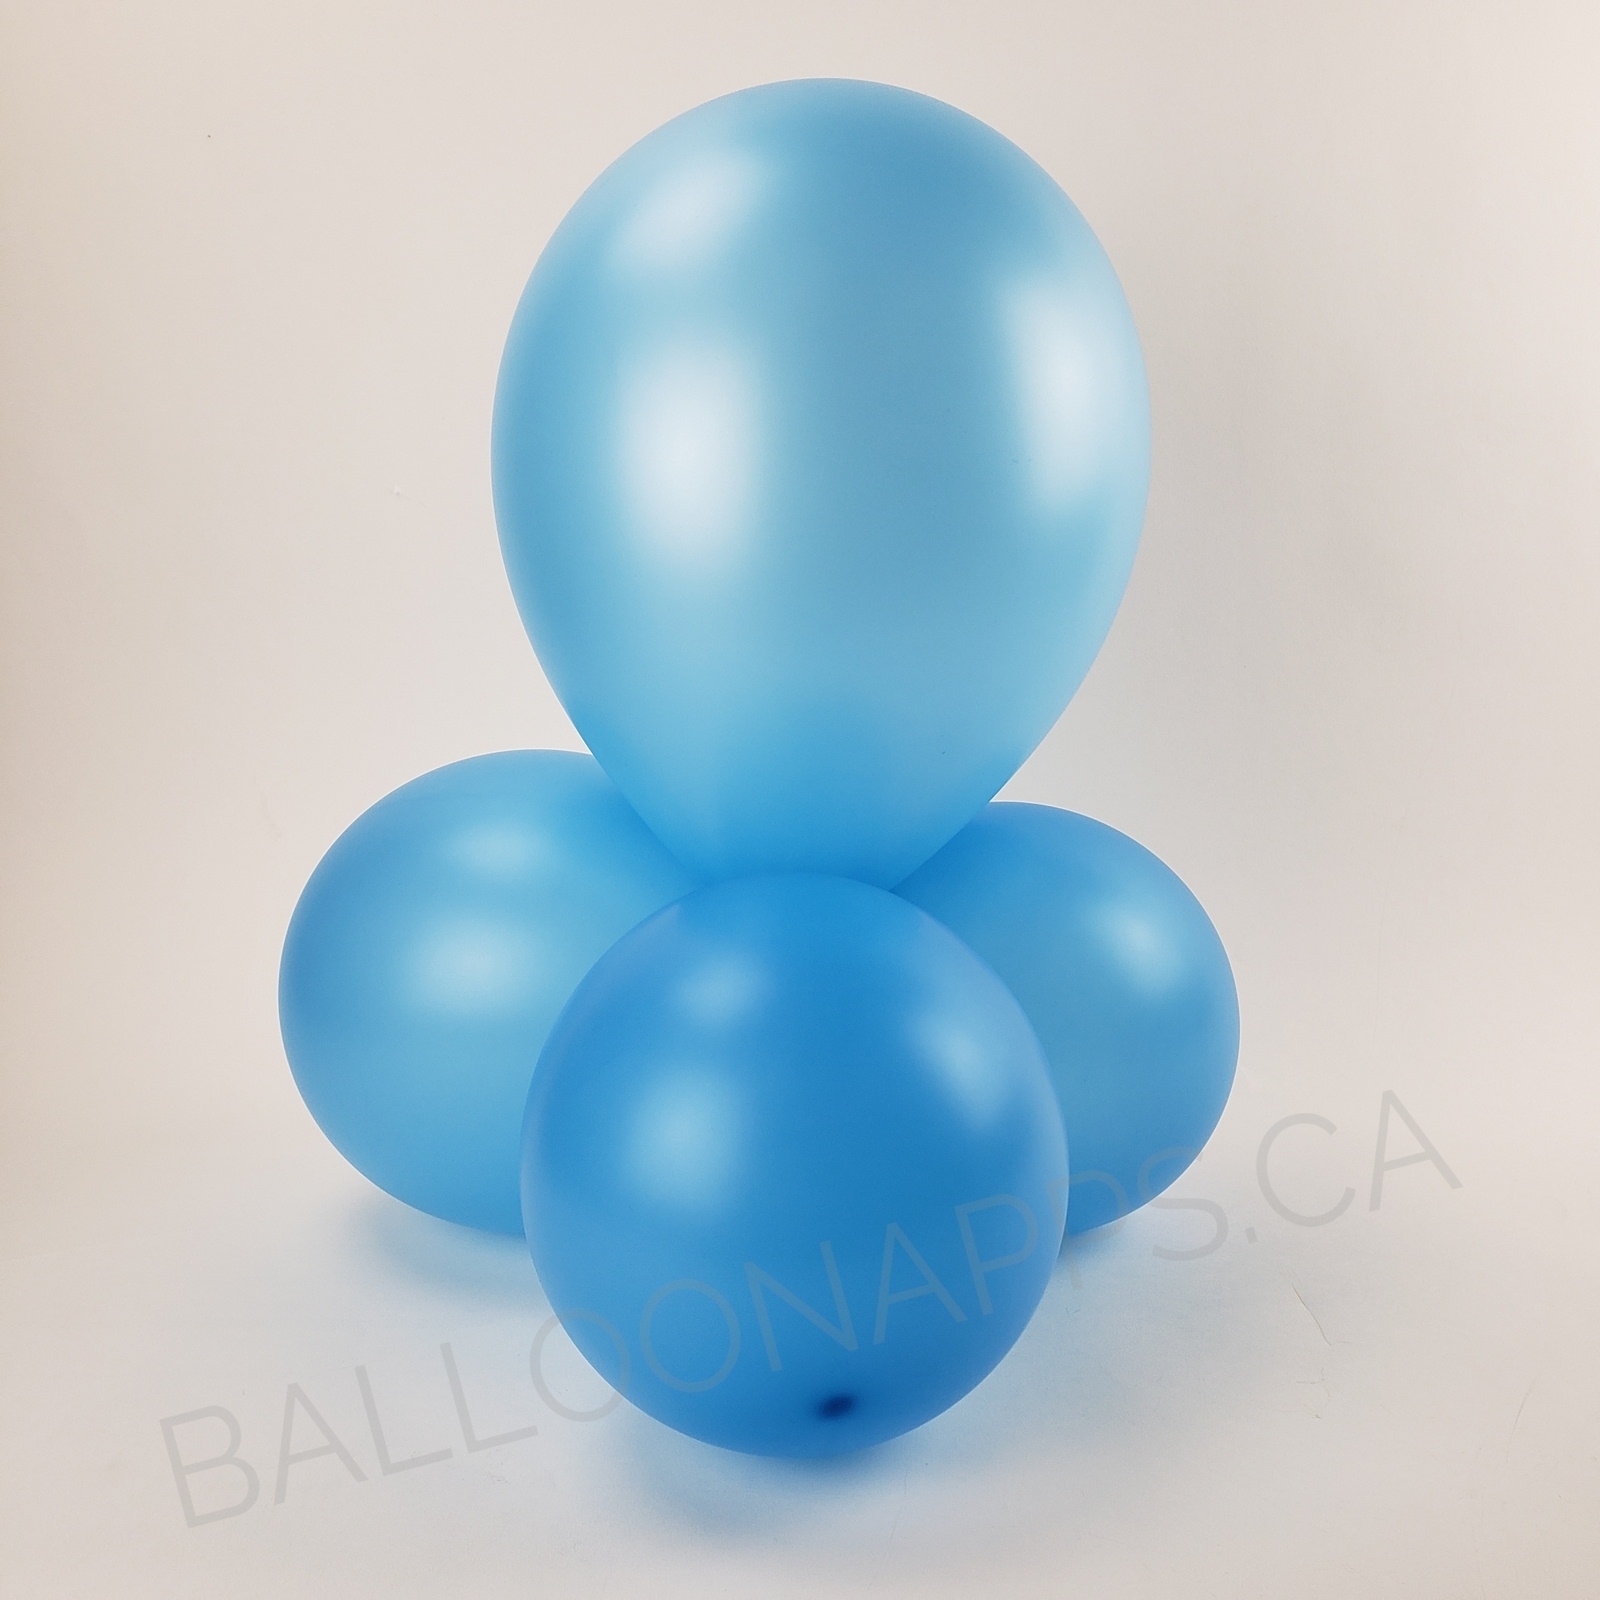 balloon texture Sempertex 260 Neon Blue